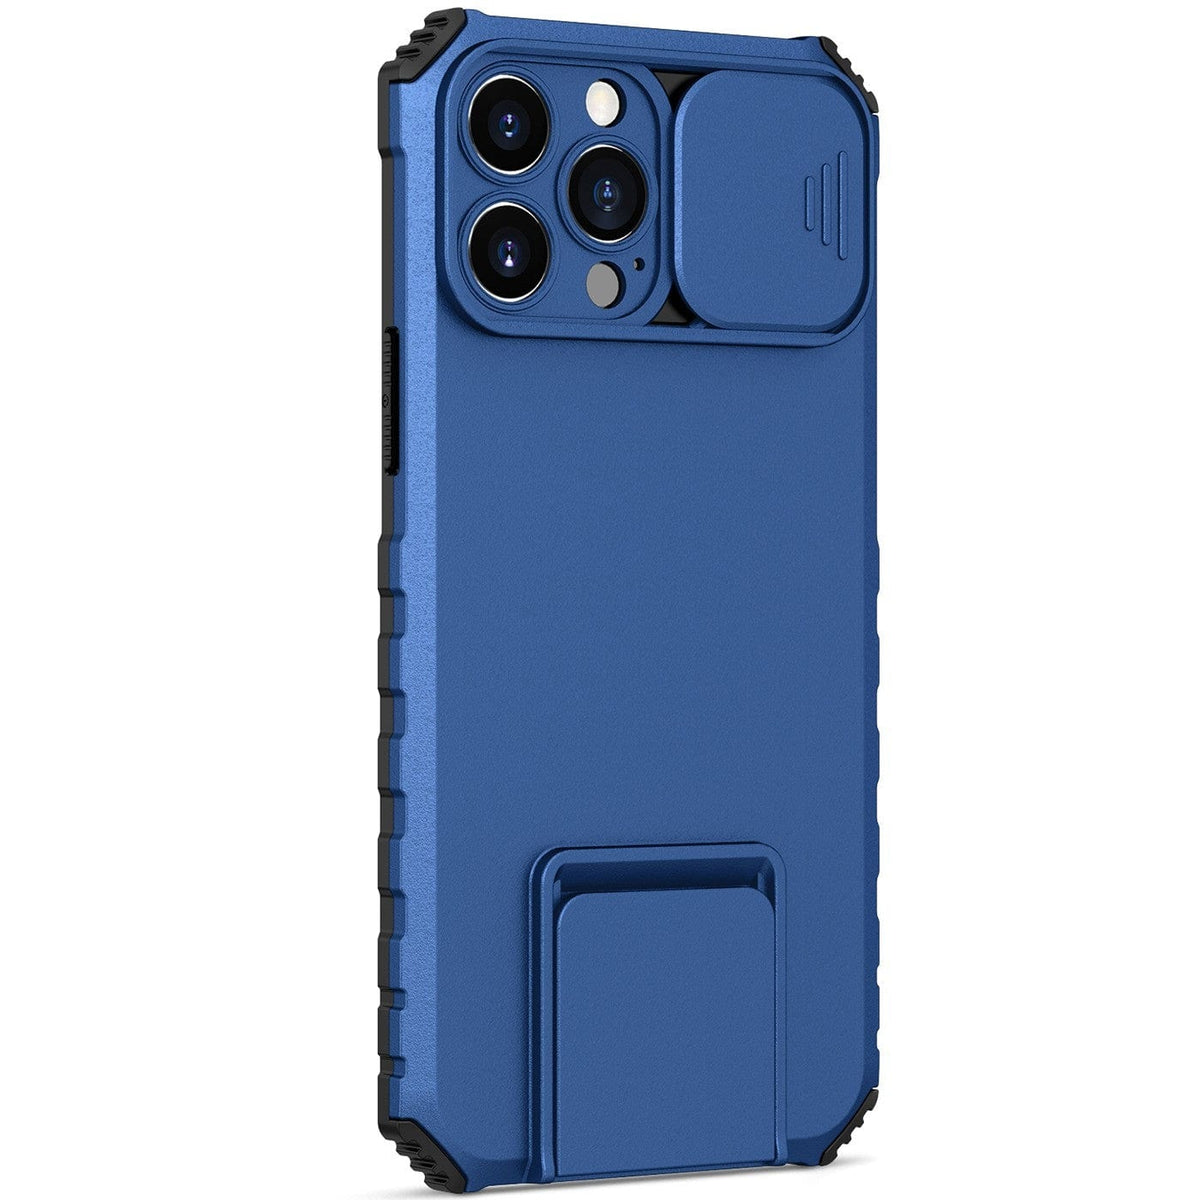 Husa Defender cu Stand pentru iPhone 11, Albastru, Suport reglabil, Antisoc, Protectie glisanta pentru camera